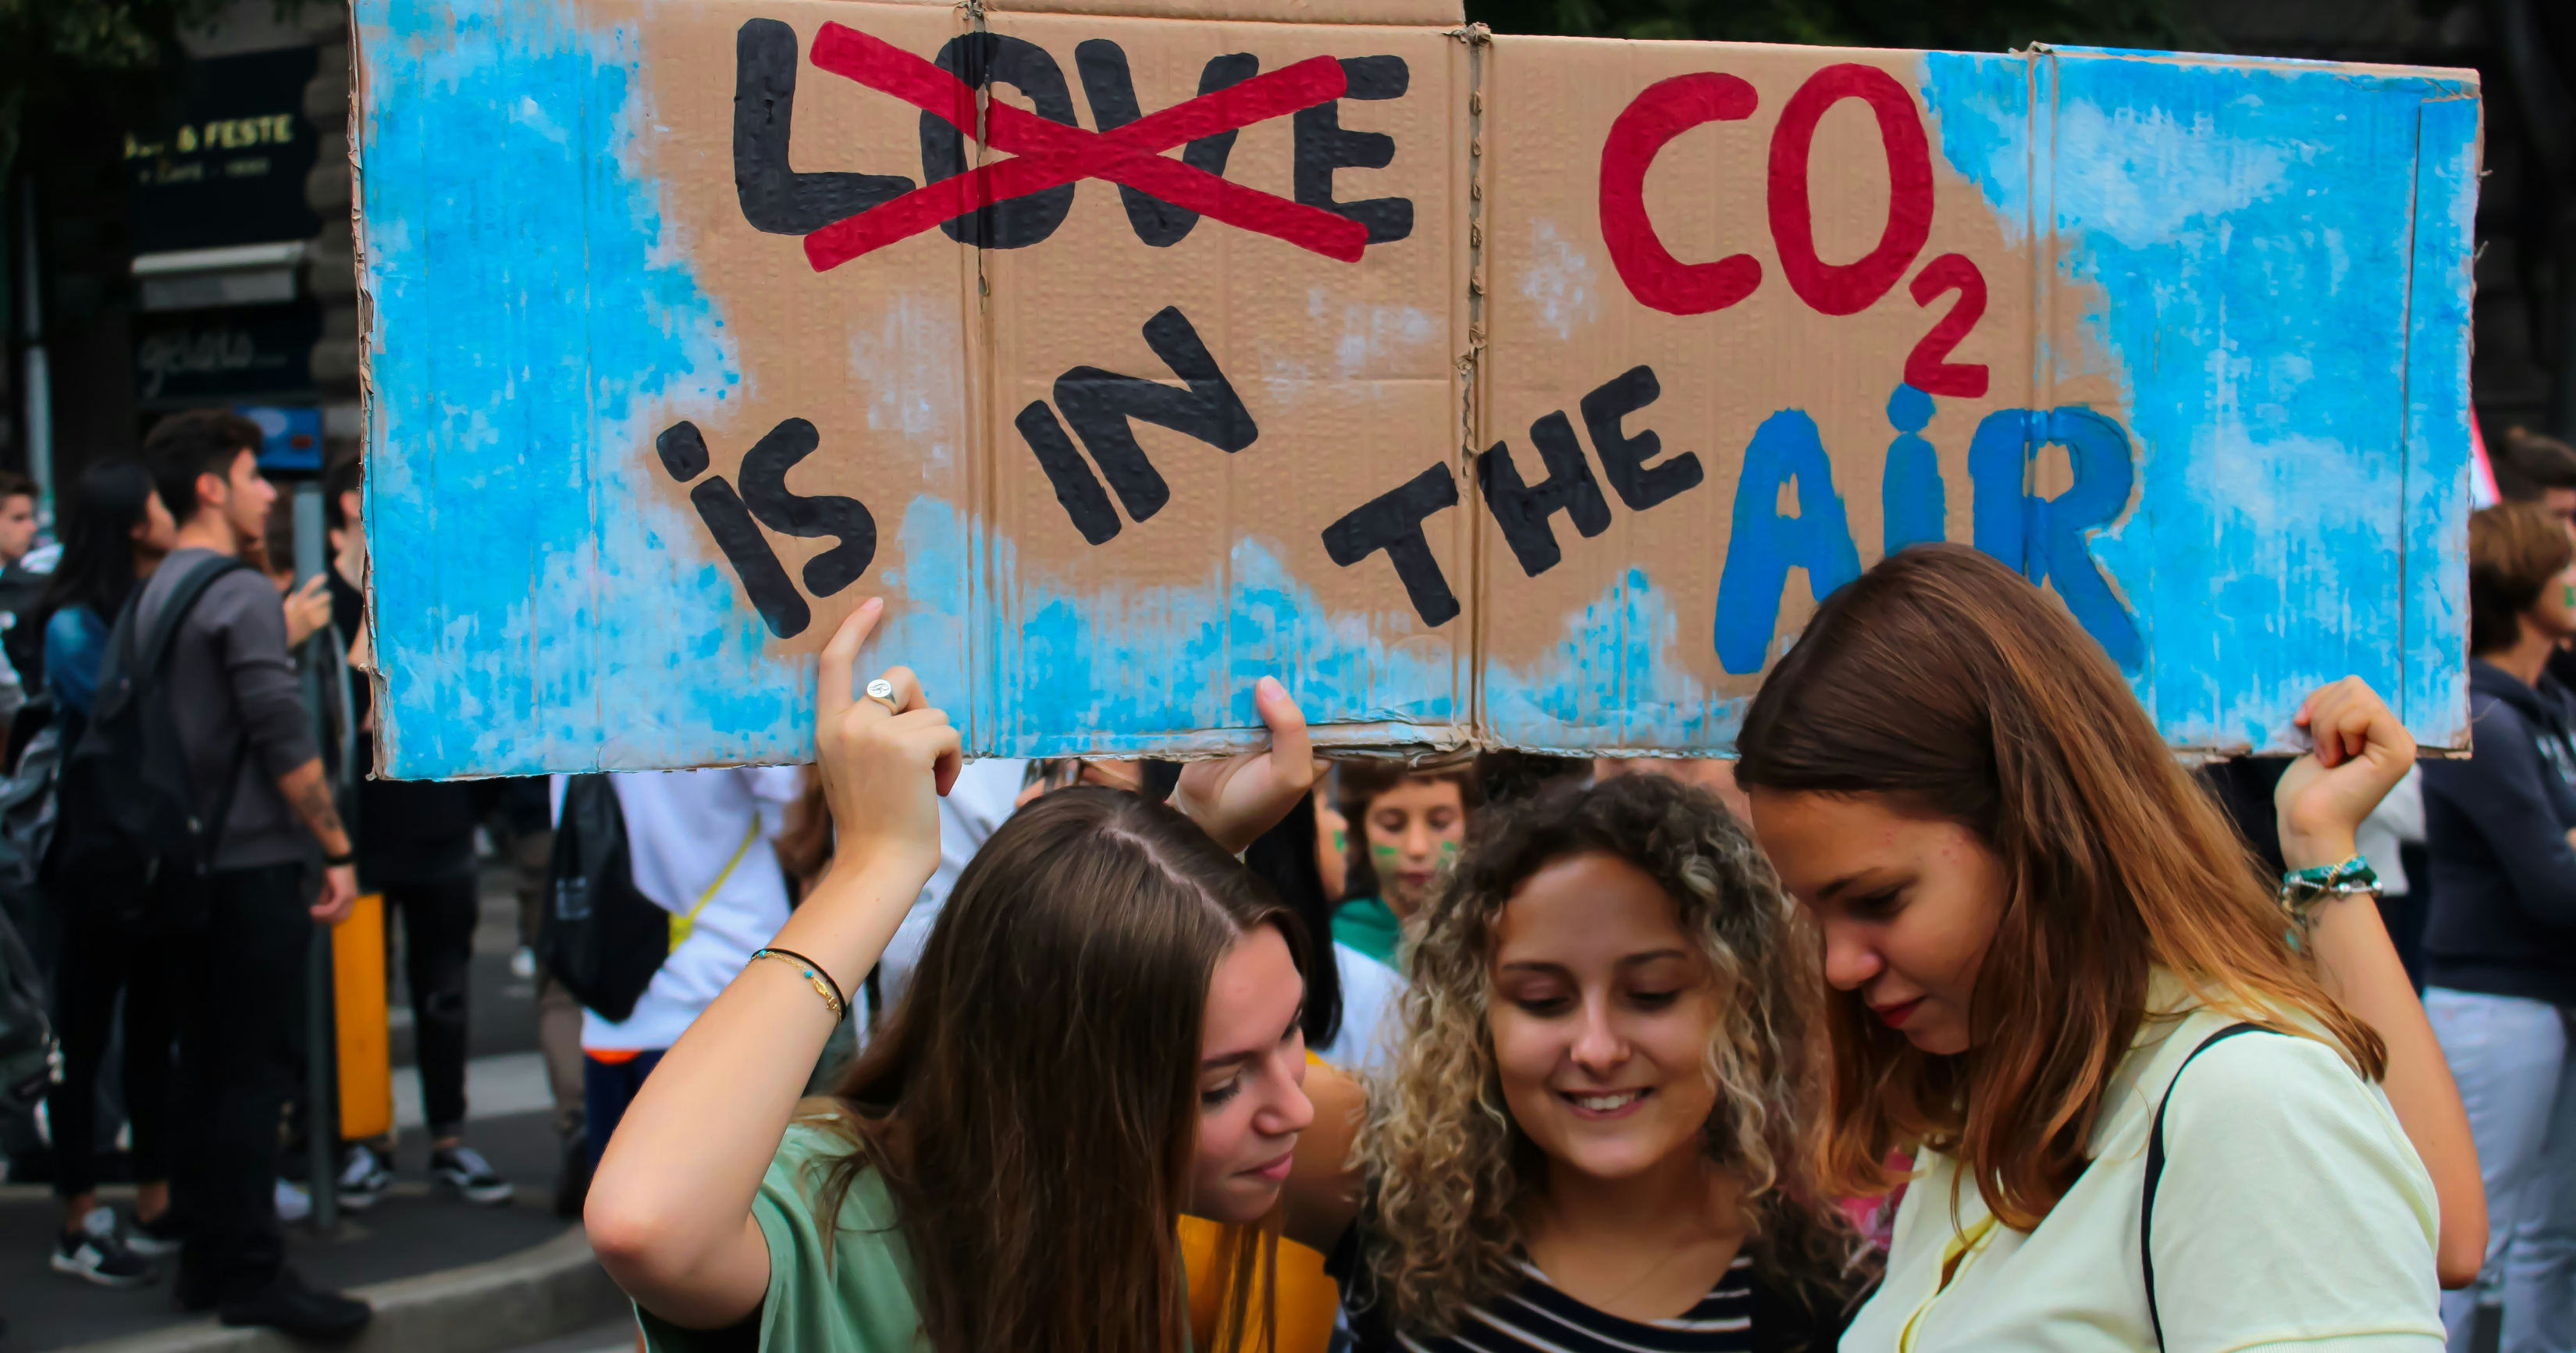 Trzy młode dziewczyny trzymają w ręku karton z przekreślonym napisem "love" i nieprzekreślonym "CO2 is in the air"